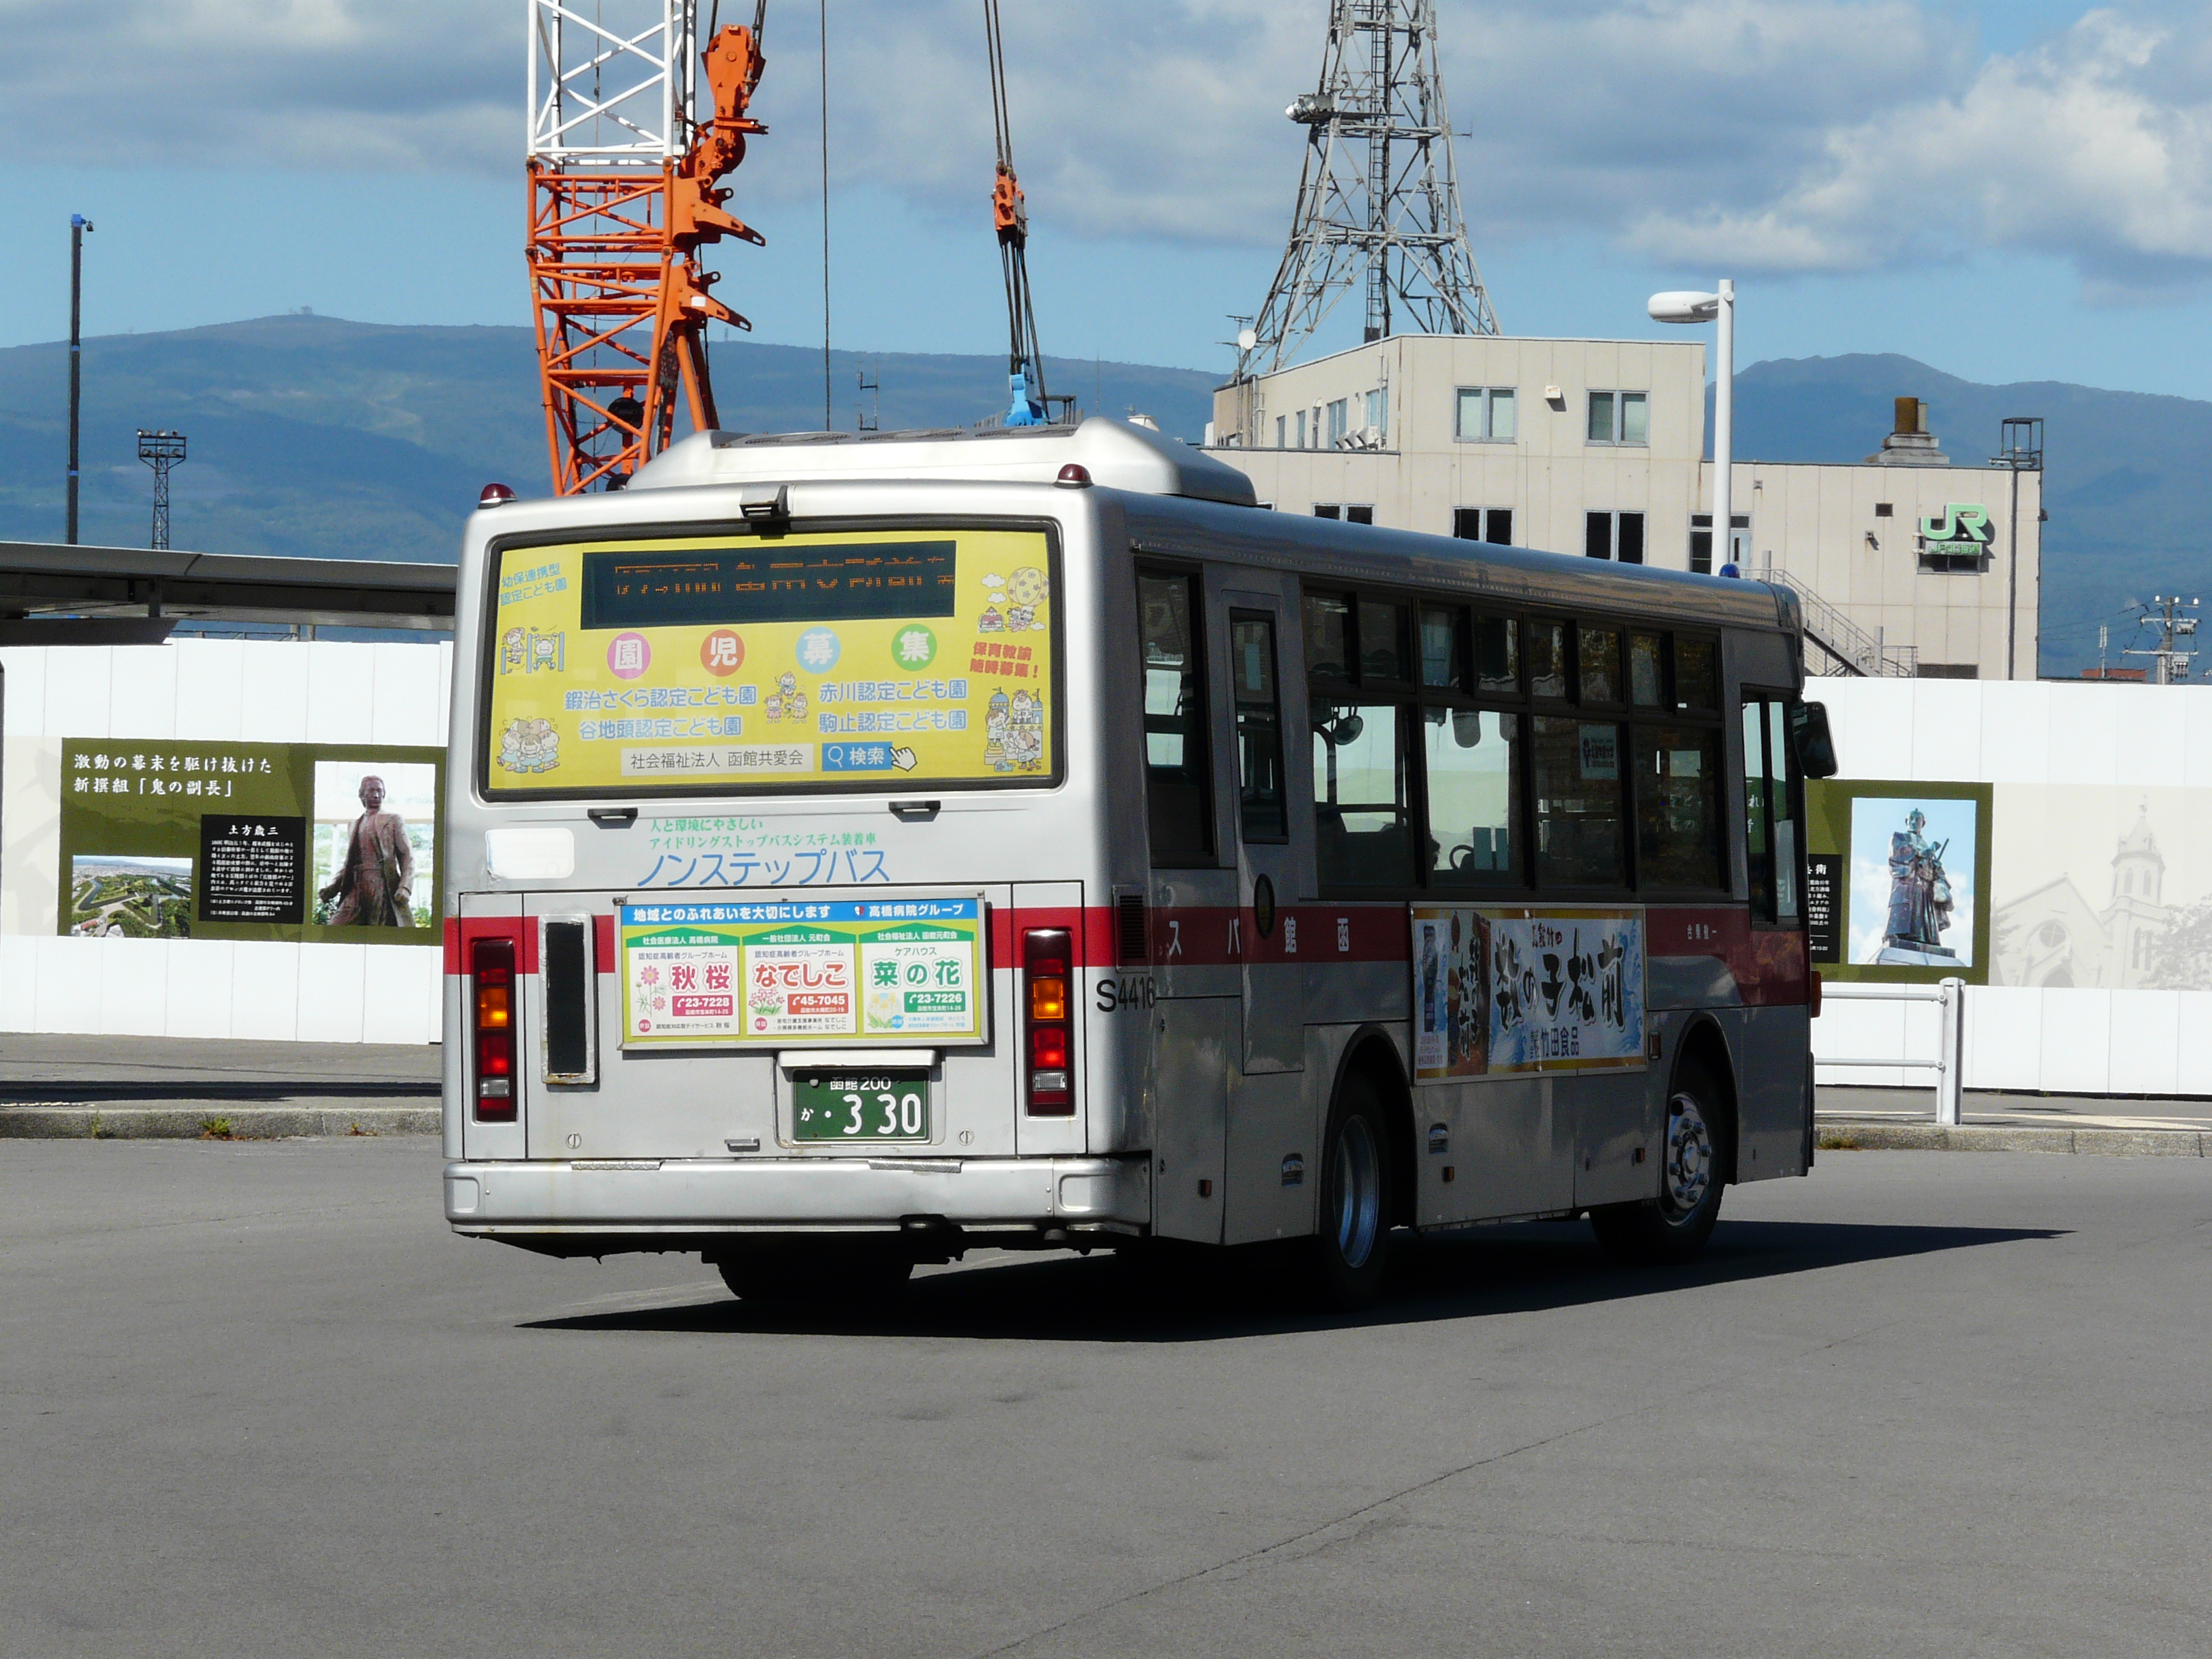 函館バス 日産ディーゼル S4416 Pdg Rm0gan けんま編集長の函館バス写真館